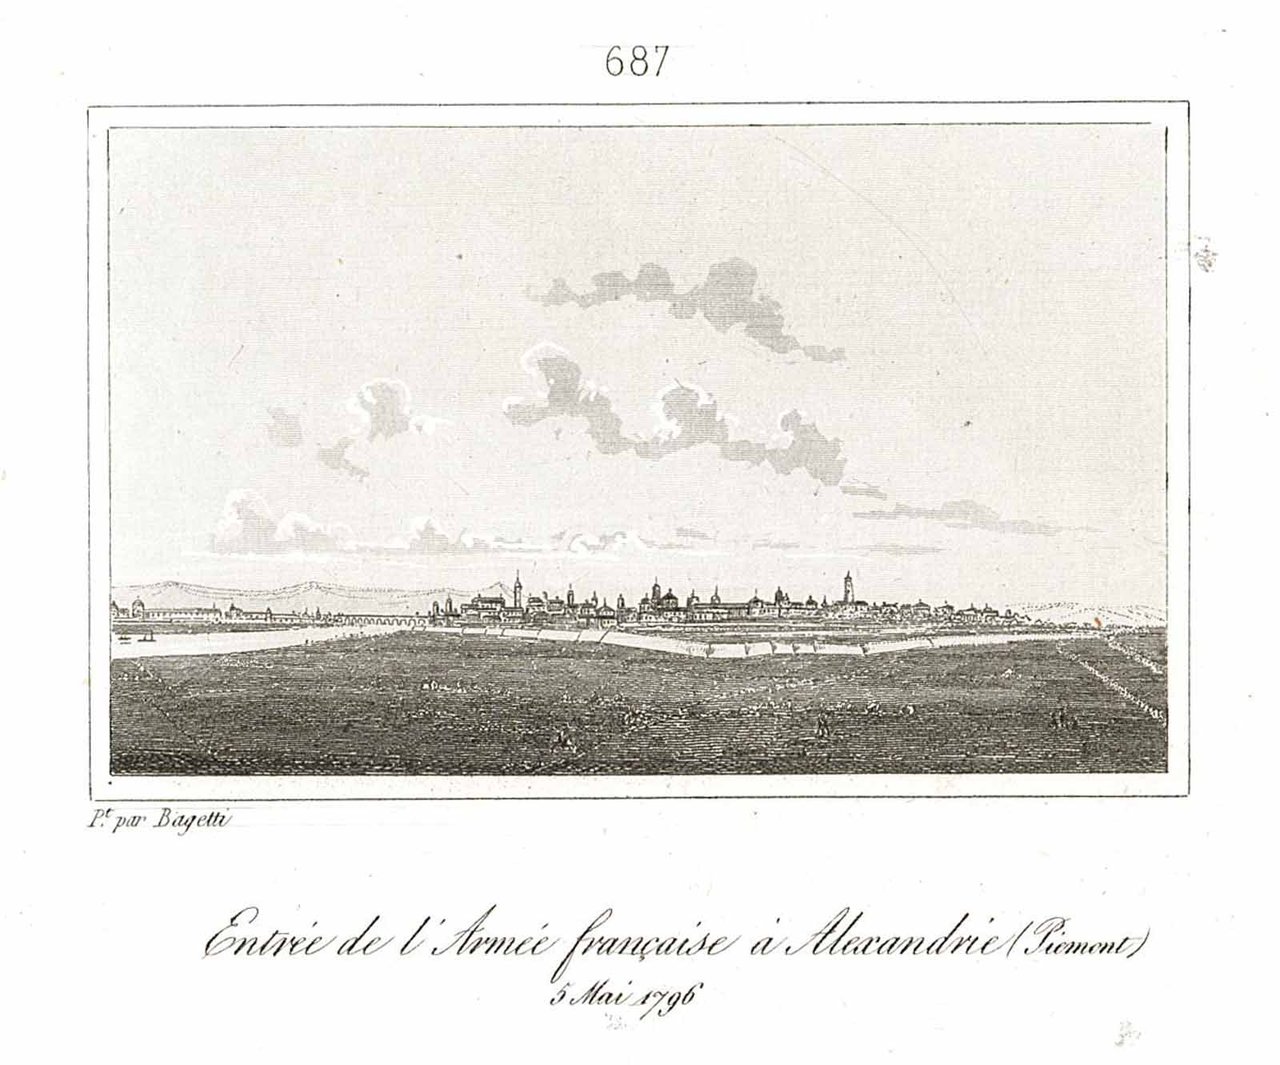 Entrée de l'Armee francaise a Alexandrie (Piemont) 5 Mai 1796